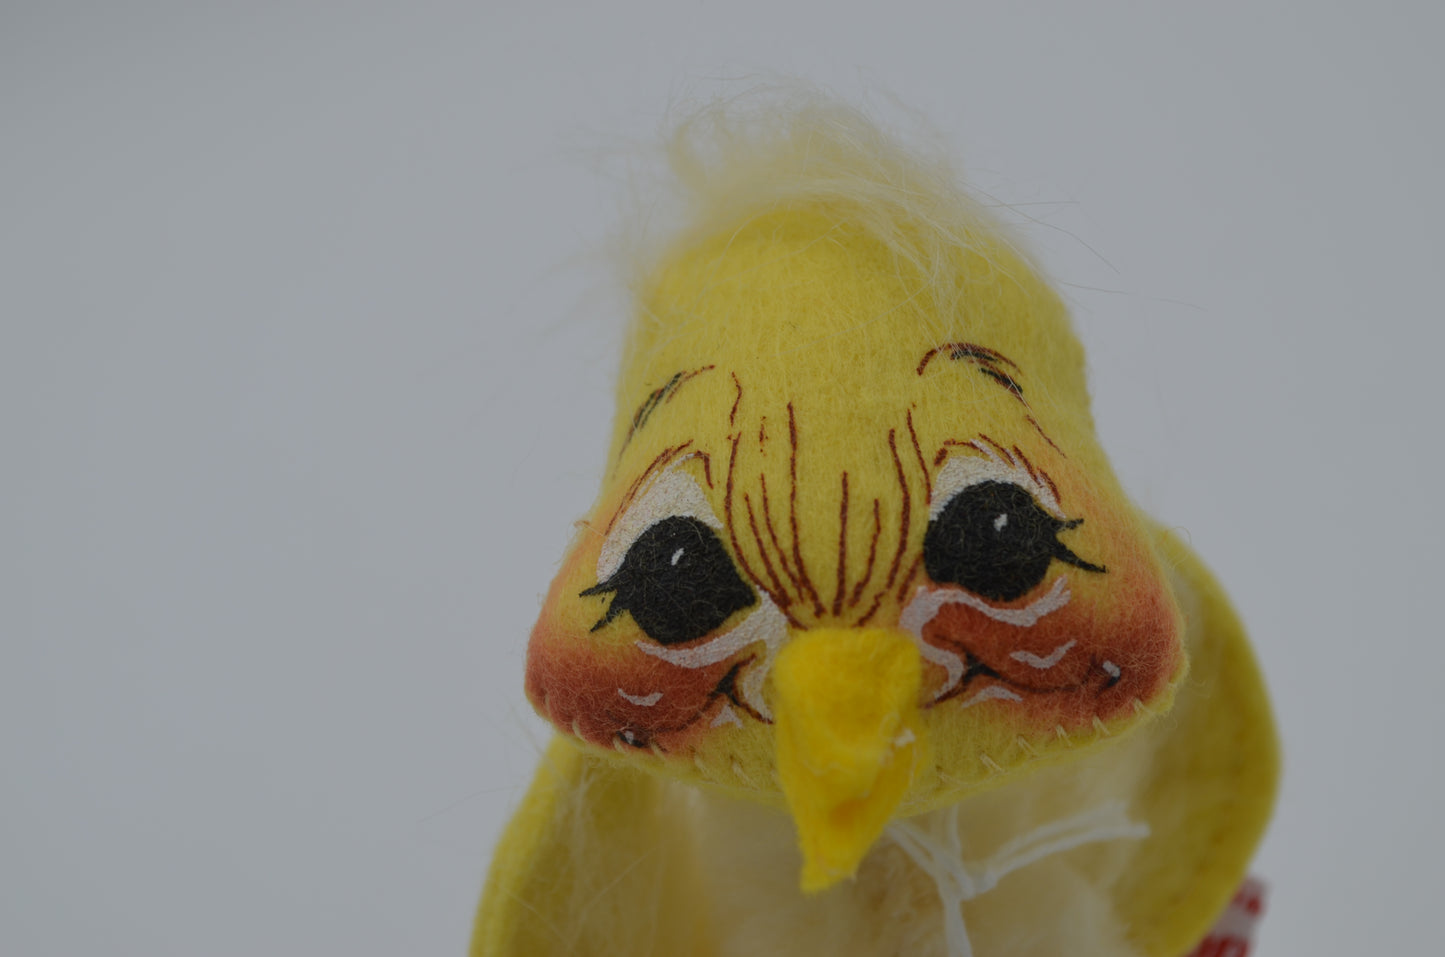 5" Fluffy Yellow Chicken 172891 Annalee